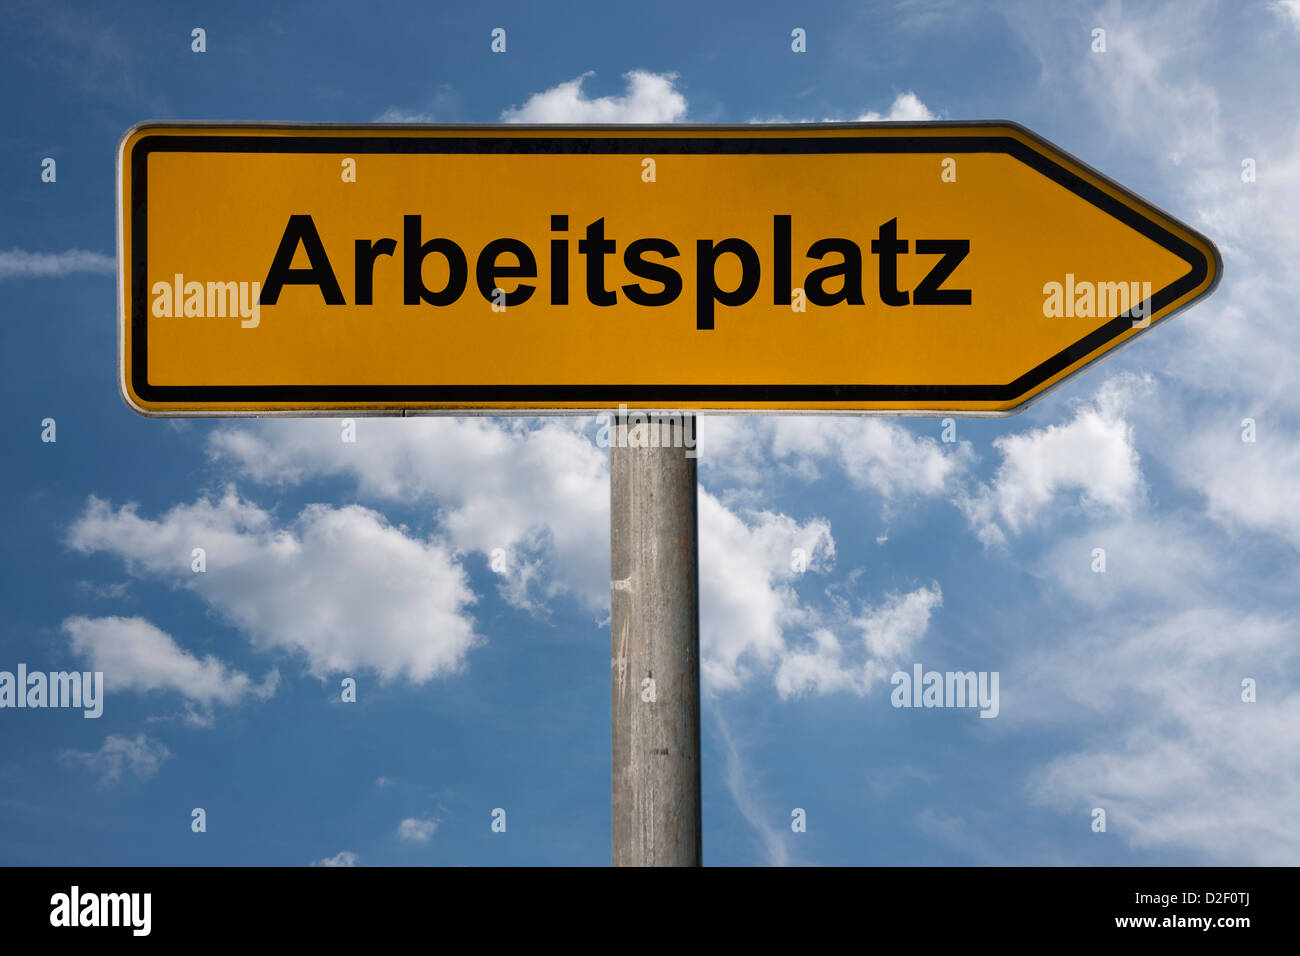 Eines Detailansicht Wegweisers mit der Aufschrift Arbeitsplatz | Detalle foto de un cartel con el título de trabajo en alemán Foto de stock